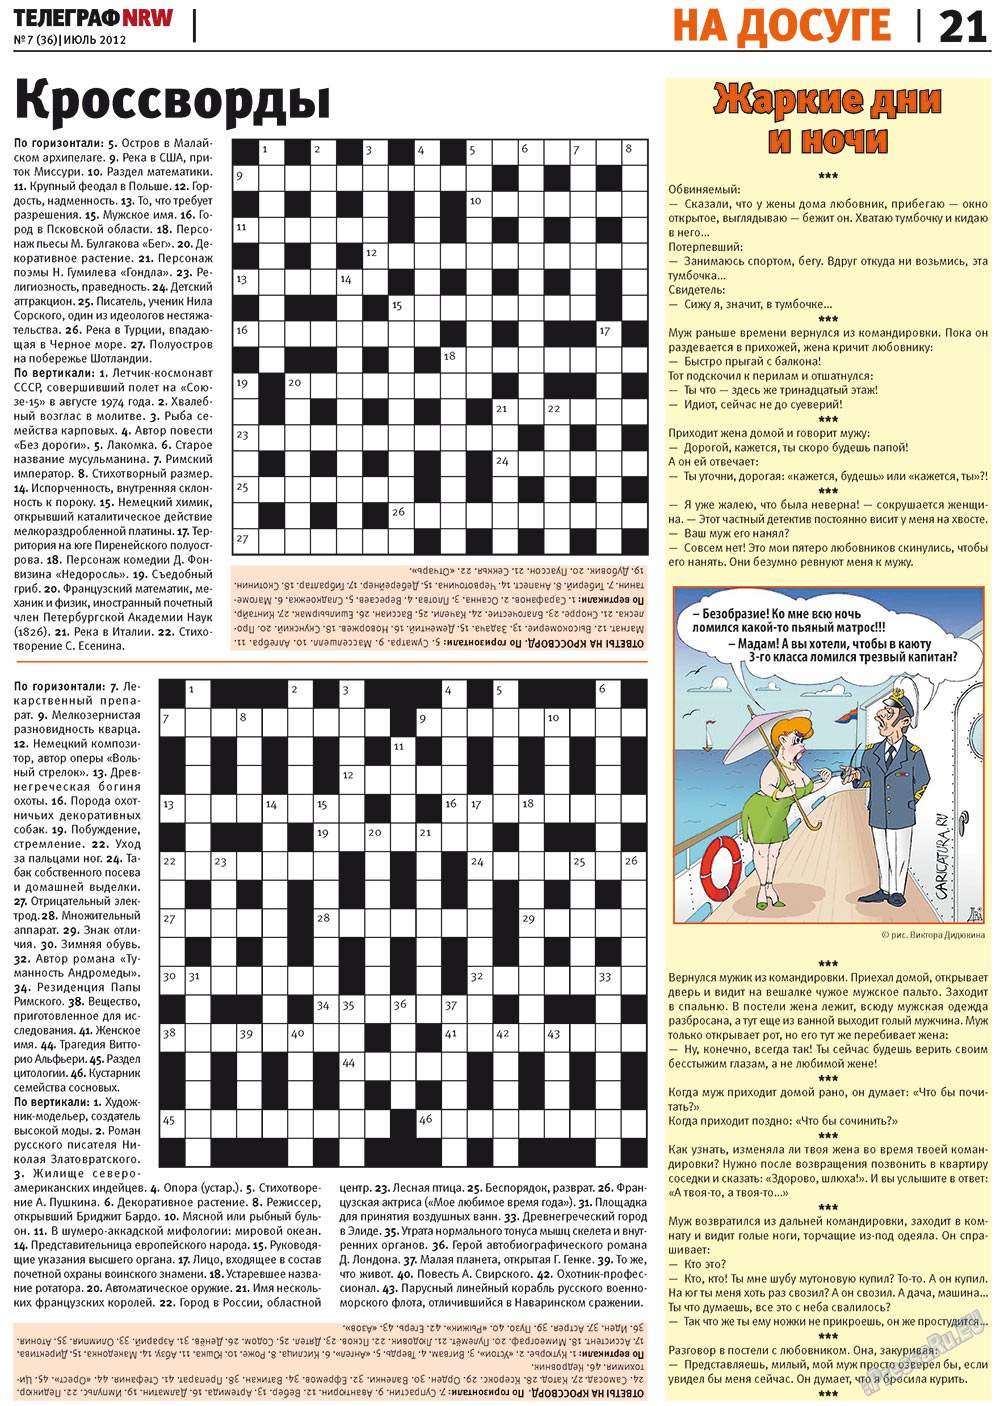 Телеграф NRW (газета). 2012 год, номер 7, стр. 21